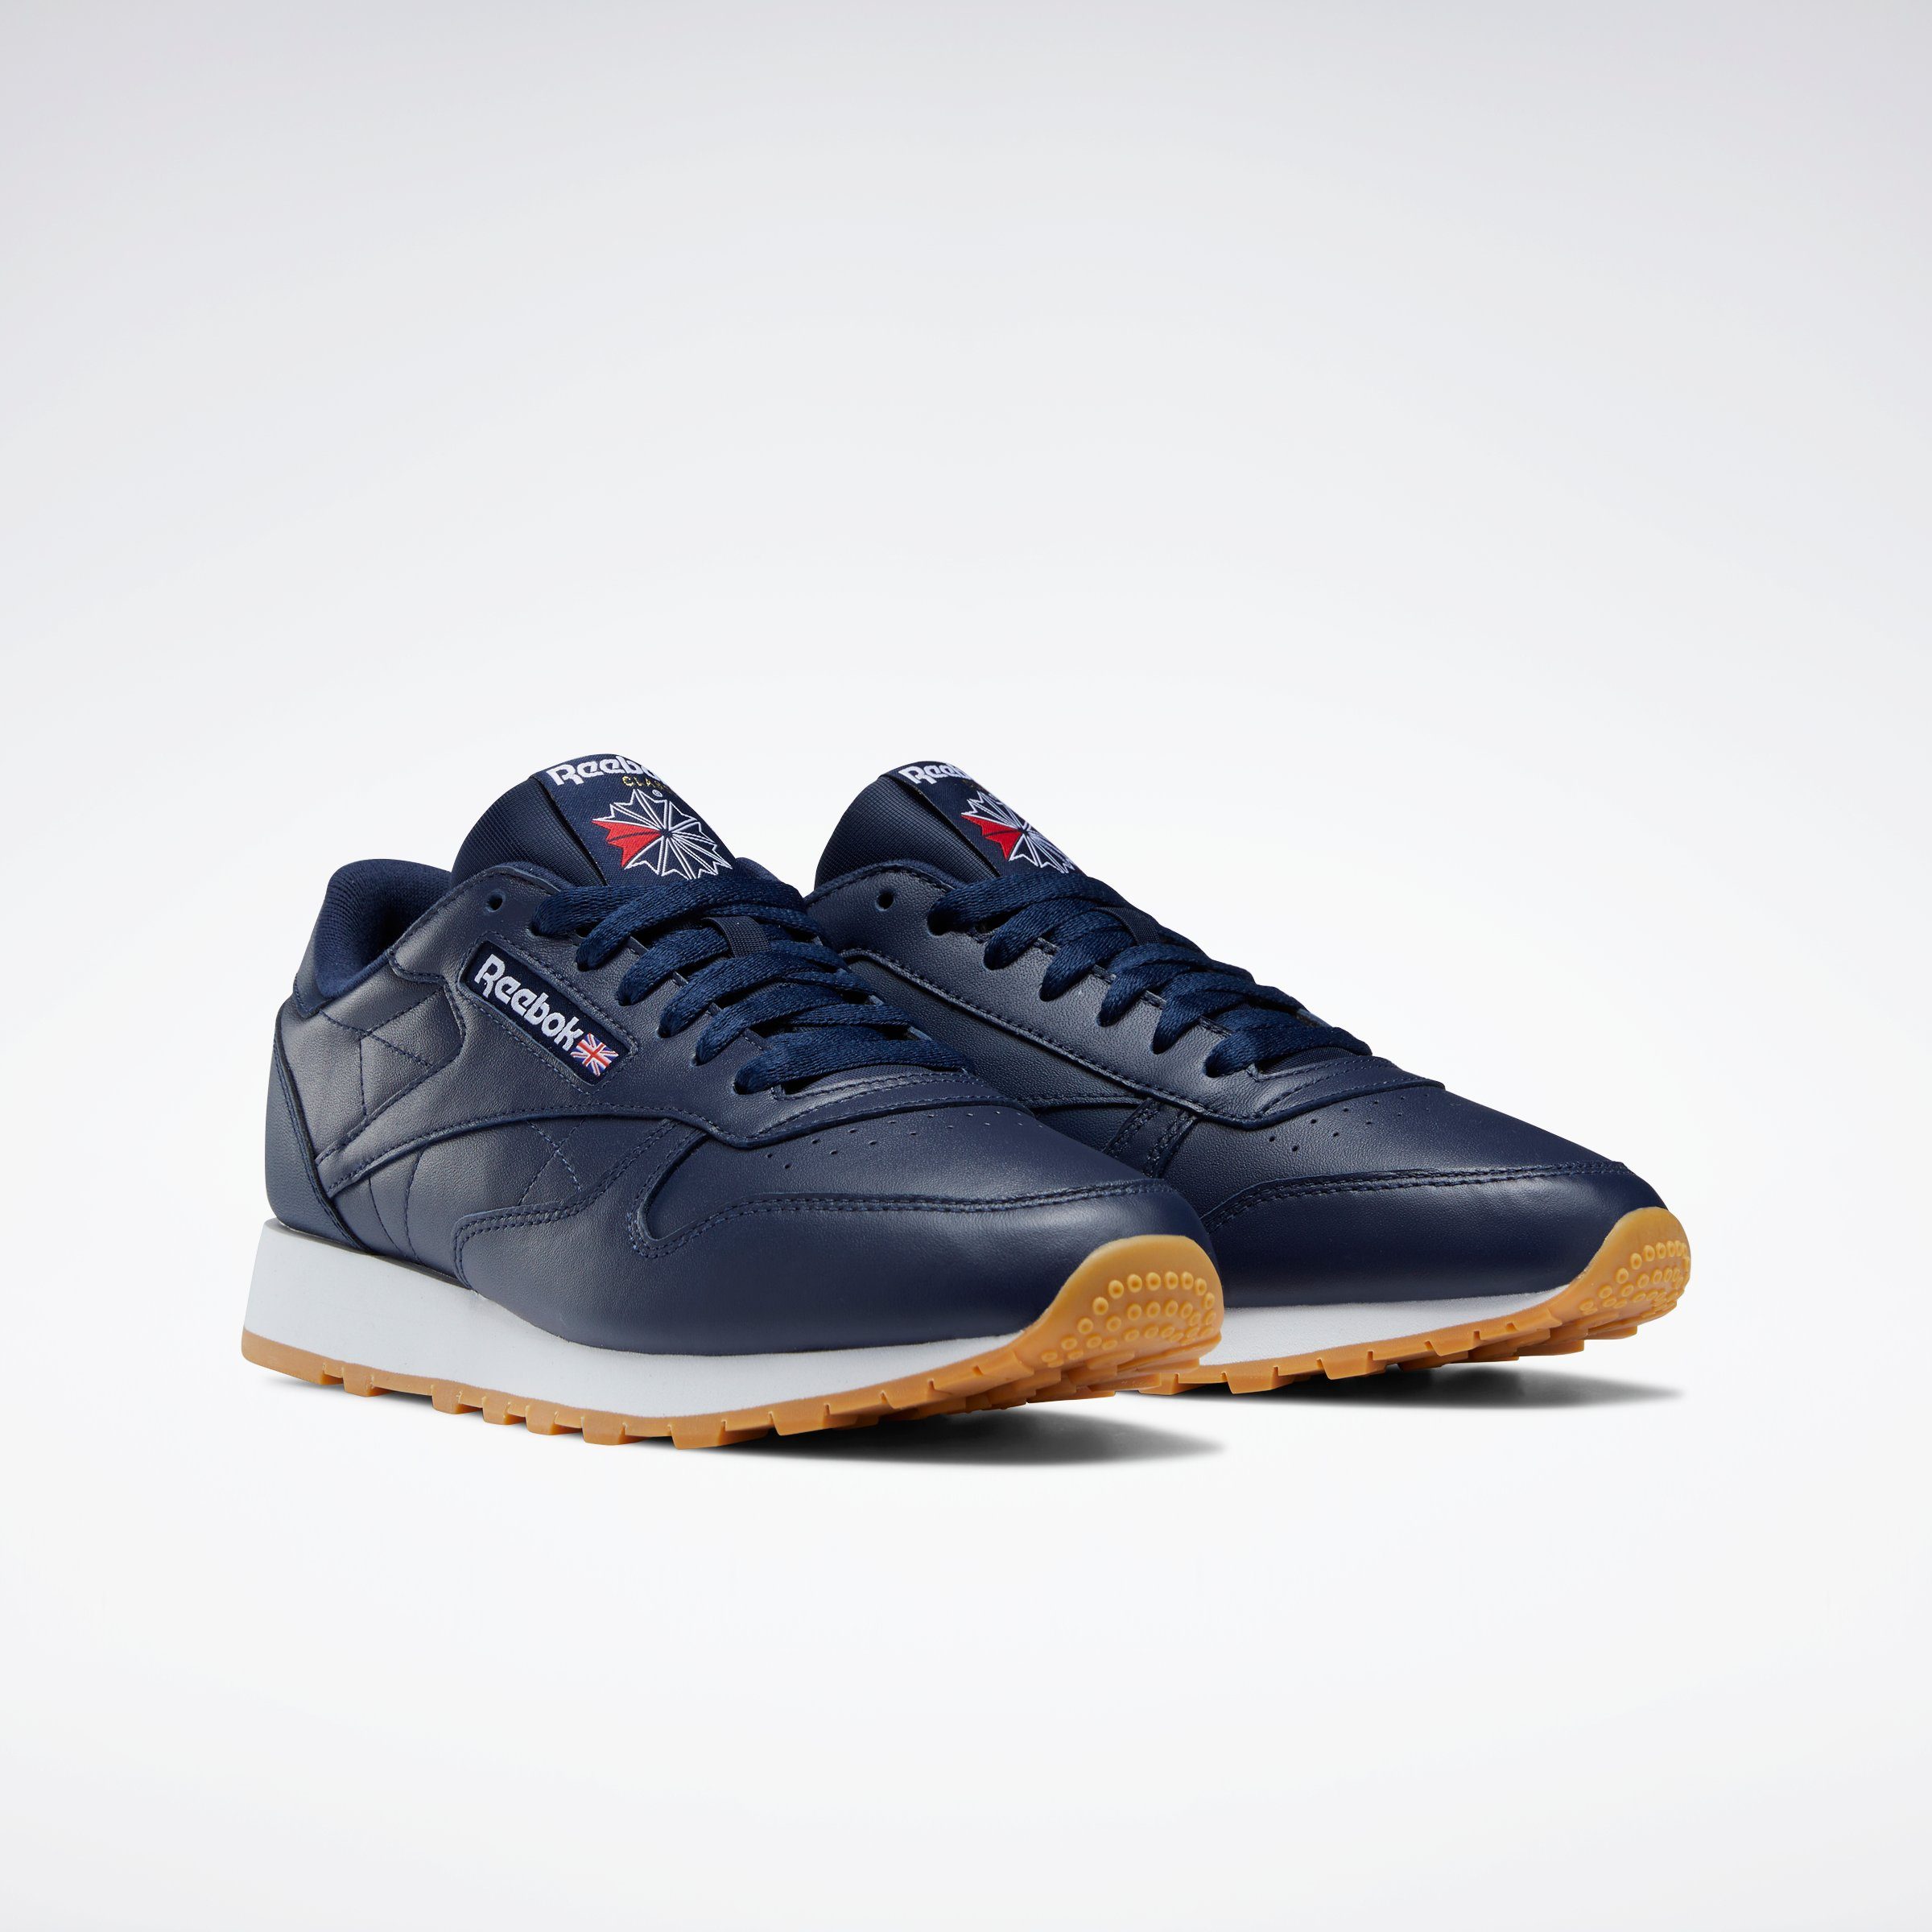 Blaue Reebok Sneaker online kaufen | OTTO